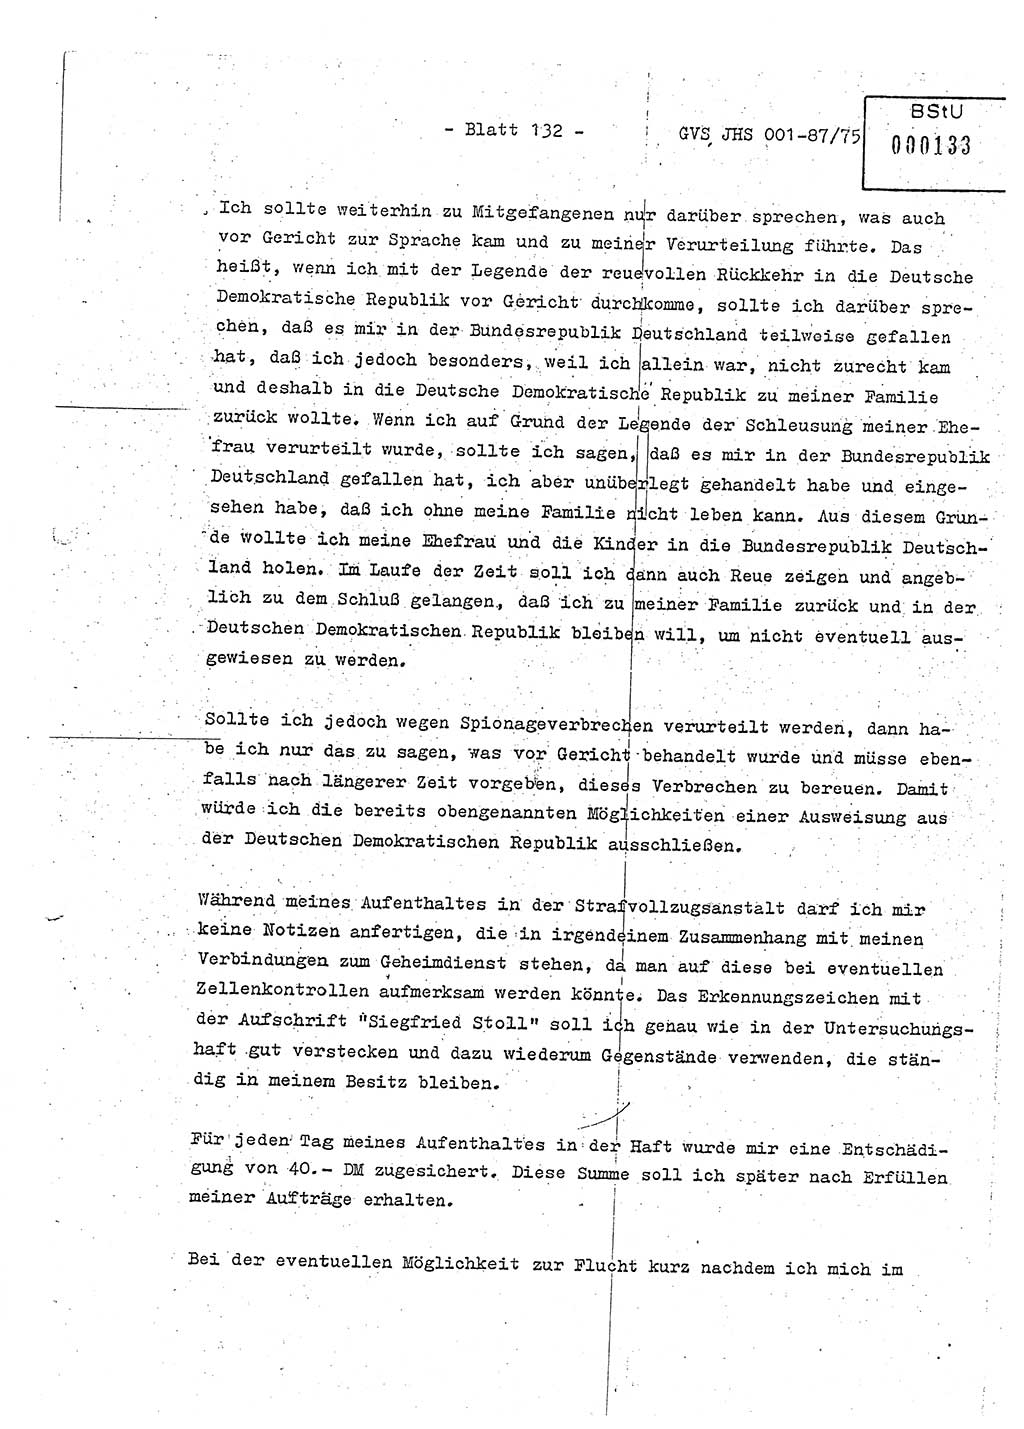 Diplomarbeit Hauptmann Volkmar Heinz (Abt. ⅩⅣ), Oberleutnant Lothar Rüdiger (BV Lpz. Abt. Ⅺ), Ministerium für Staatssicherheit (MfS) [Deutsche Demokratische Republik (DDR)], Juristische Hochschule (JHS), Geheime Verschlußsache (GVS) o001-87/75, Potsdam 1975, Seite 132 (Dipl.-Arb. MfS DDR JHS GVS o001-87/75 1975, S. 132)